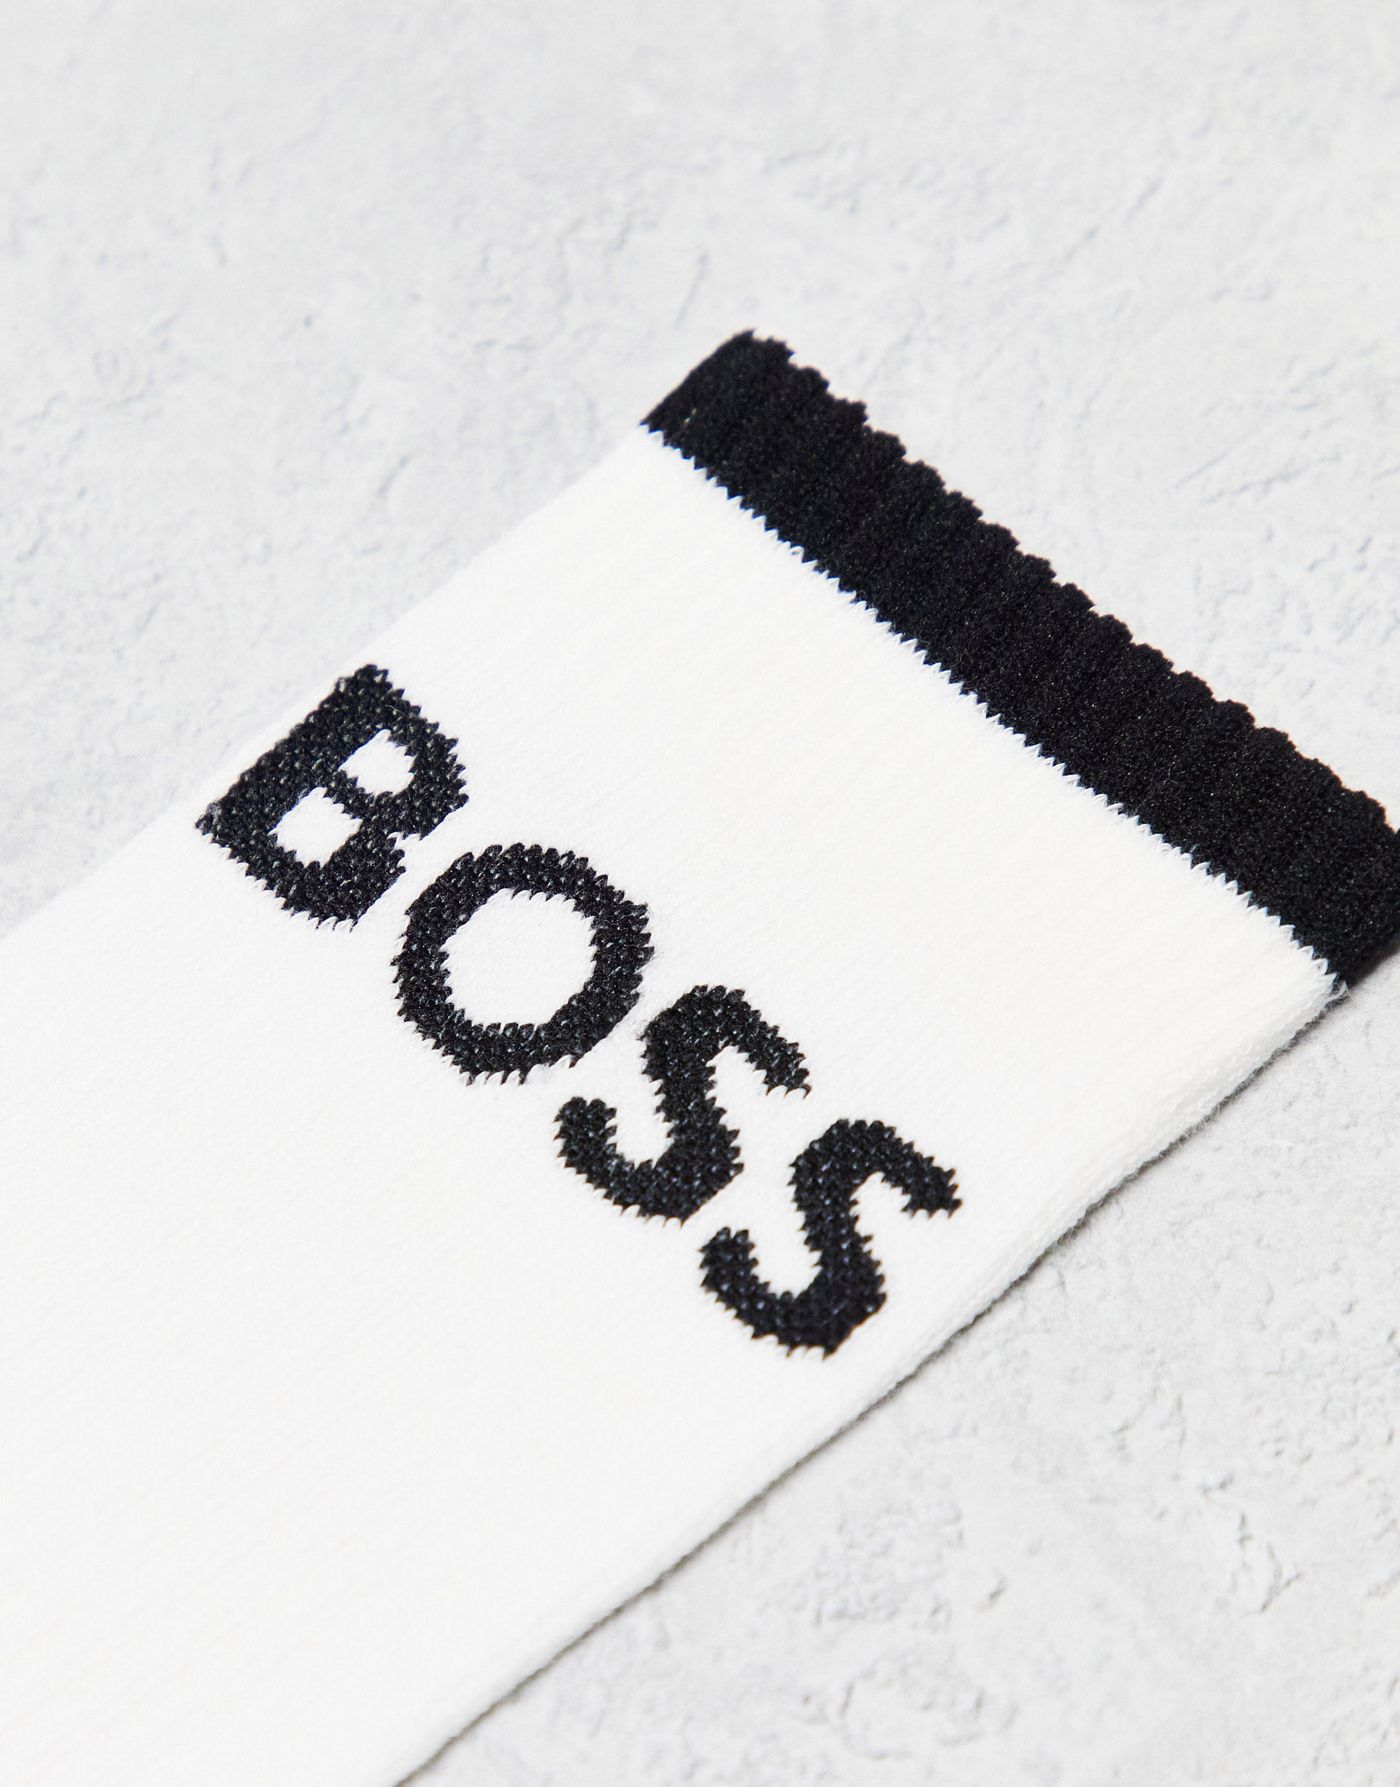 Boss Bodywear 6 pack logo ribbed socks in white